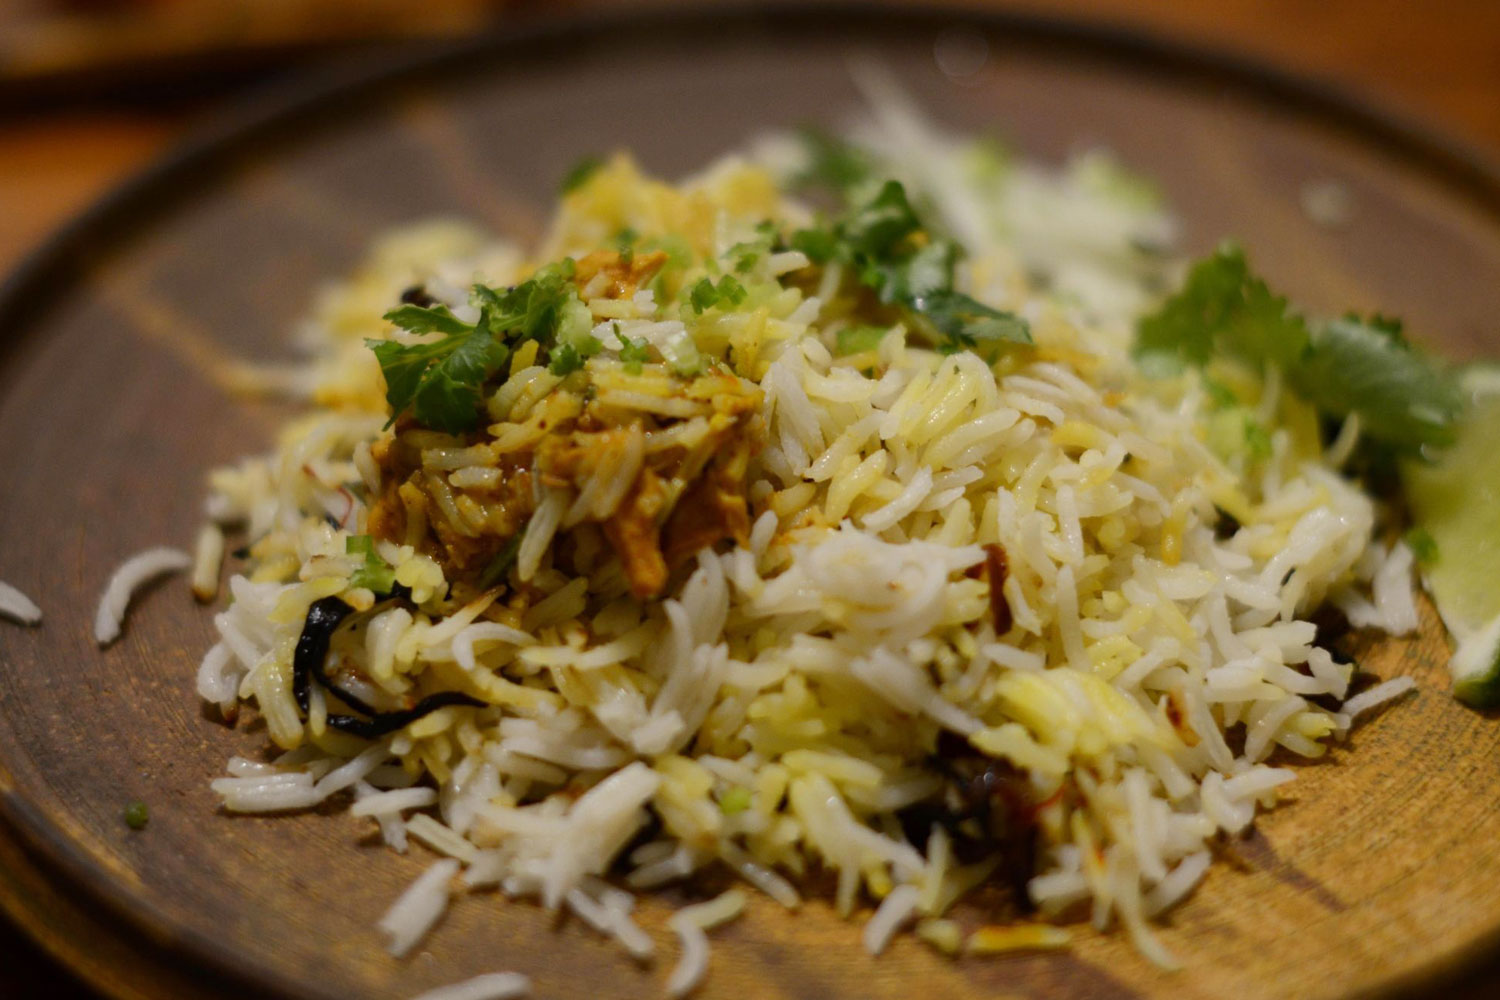 料理雑誌の編集・執筆をしていた経験から自分で料理を作って食べることも多い。最近はカレー作りにハマっている。エリックサウスの稲田俊輔さんのチキンビリヤニのレシピがお気に入り。鶏肉をスパイスでマリネする際にヨーグルトが使われる。ヨーグルトにキュウリなどの野菜を混ぜたインドの漬け物「ライタ」も知られるように、インド料理とヨーグルトの関係は深い。